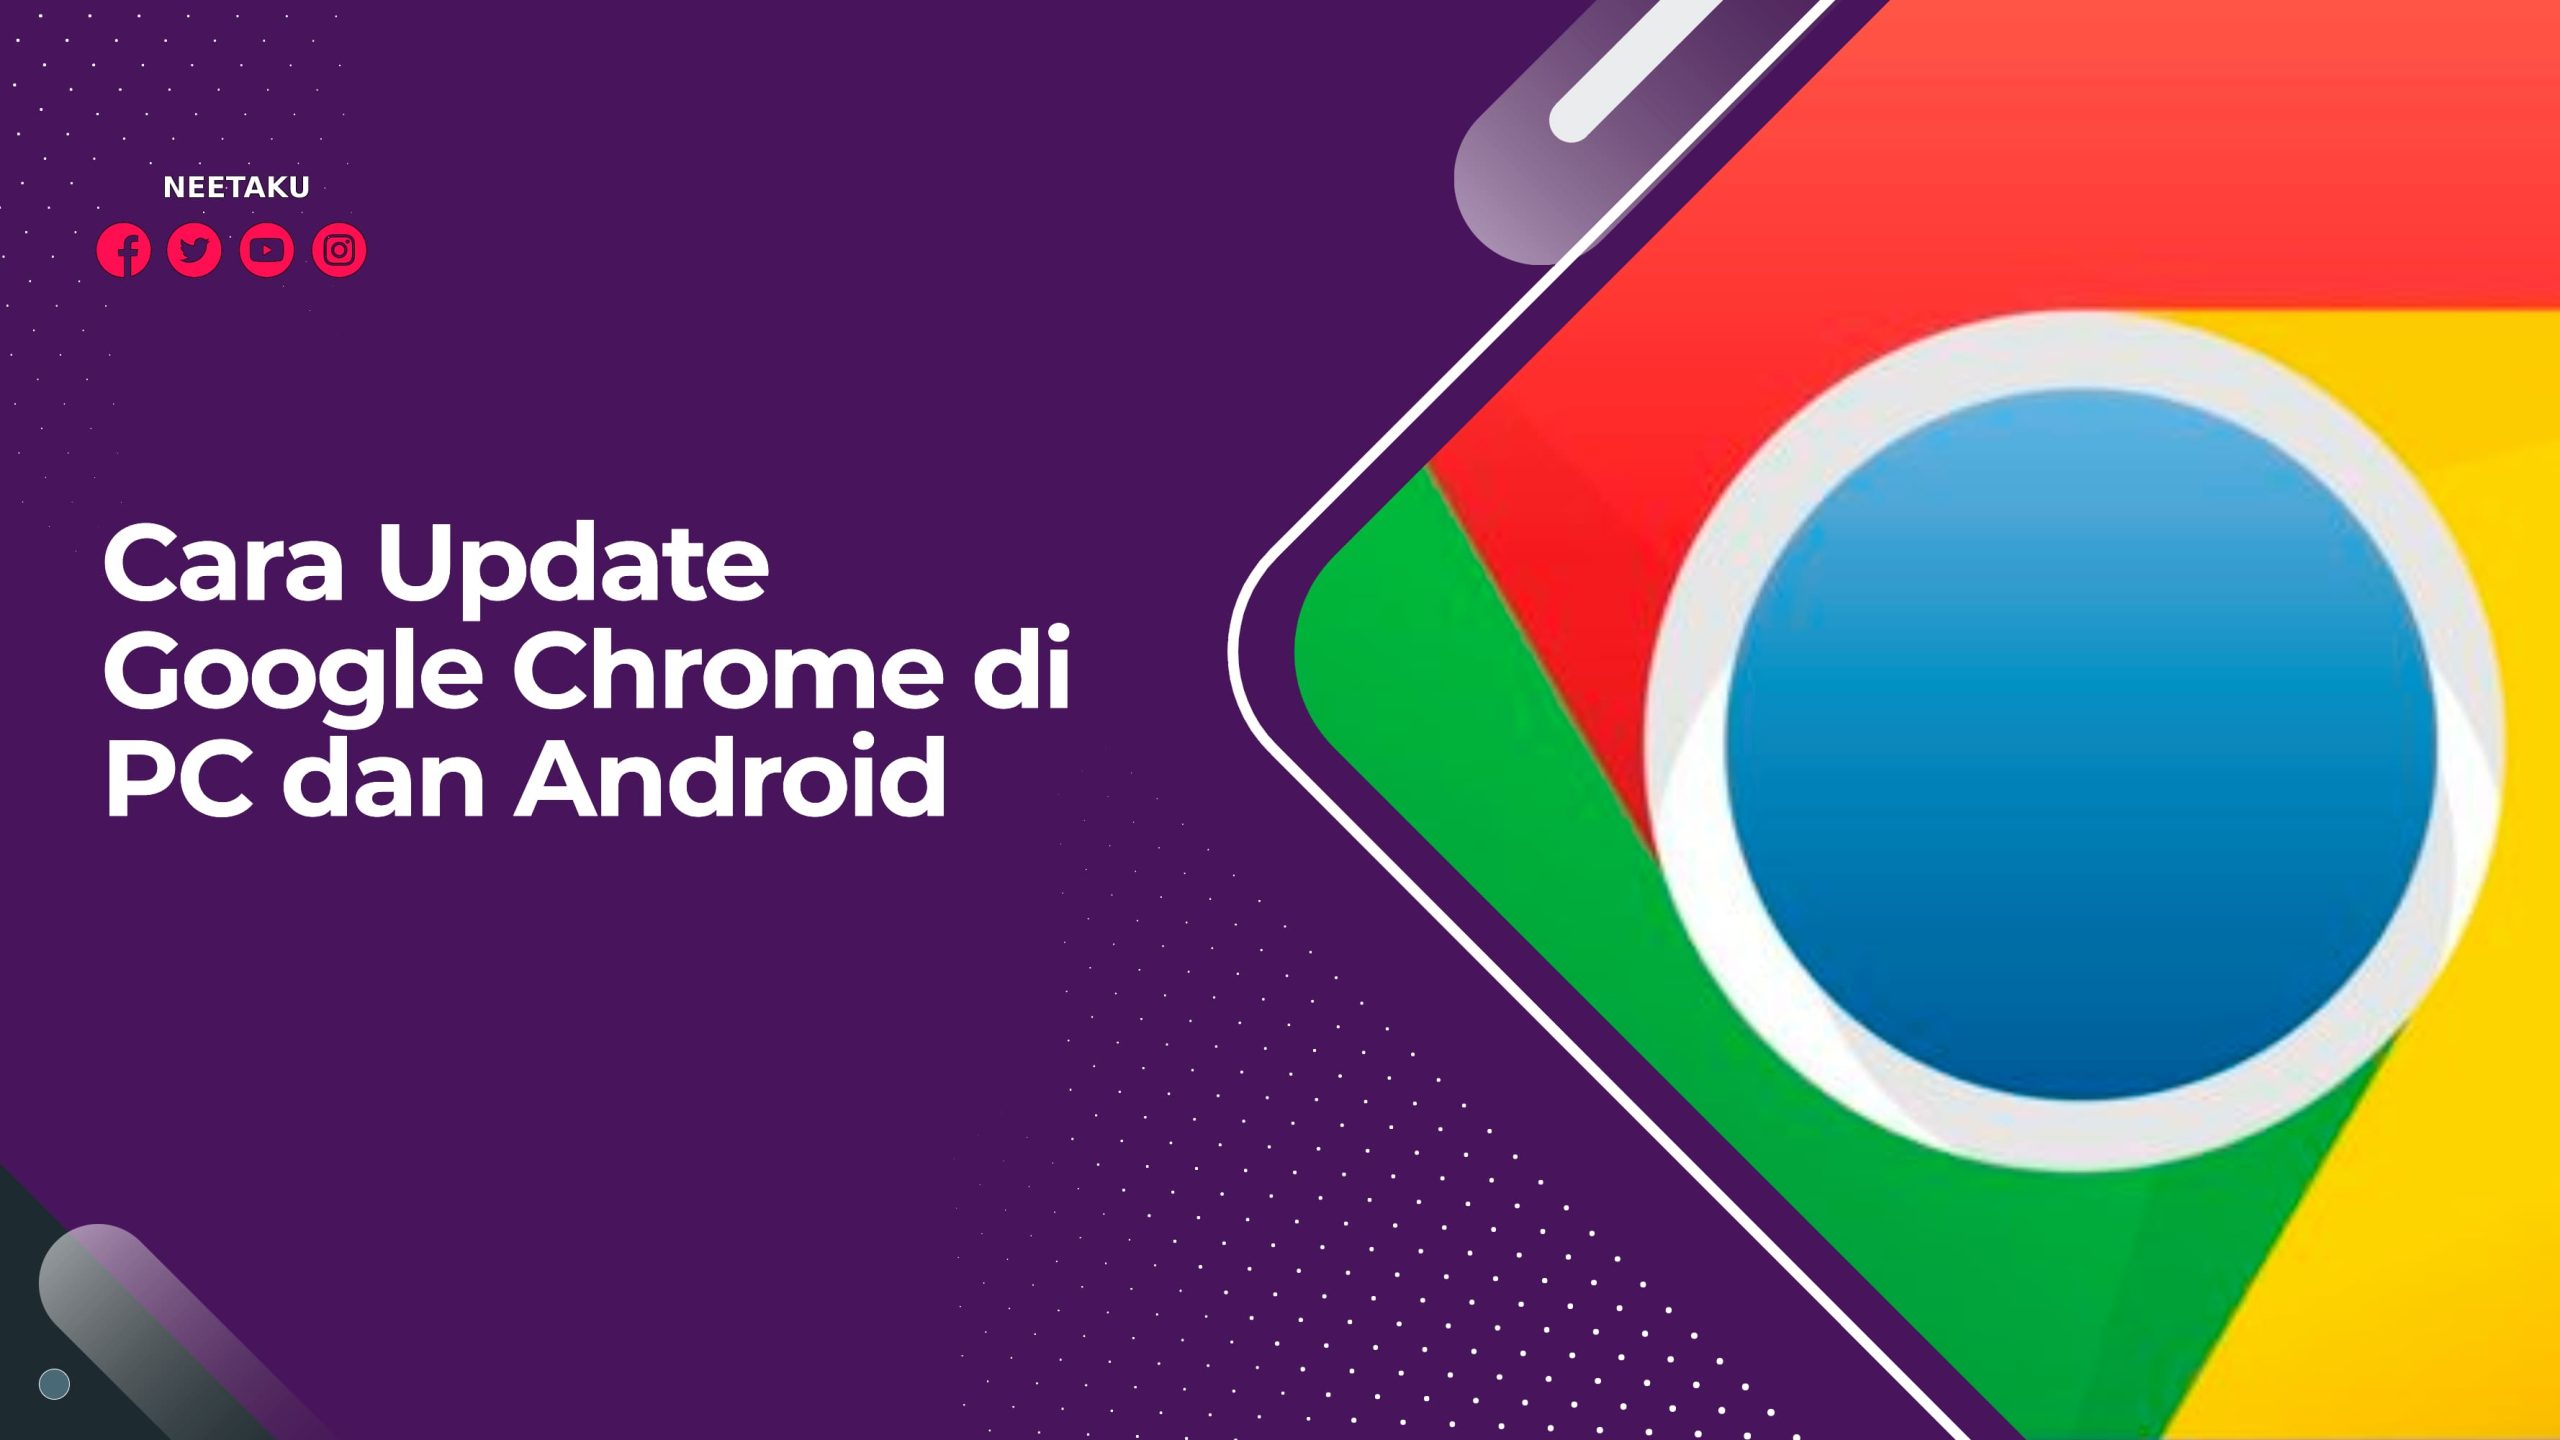 Cara Update Google Chrome di PC dan Android